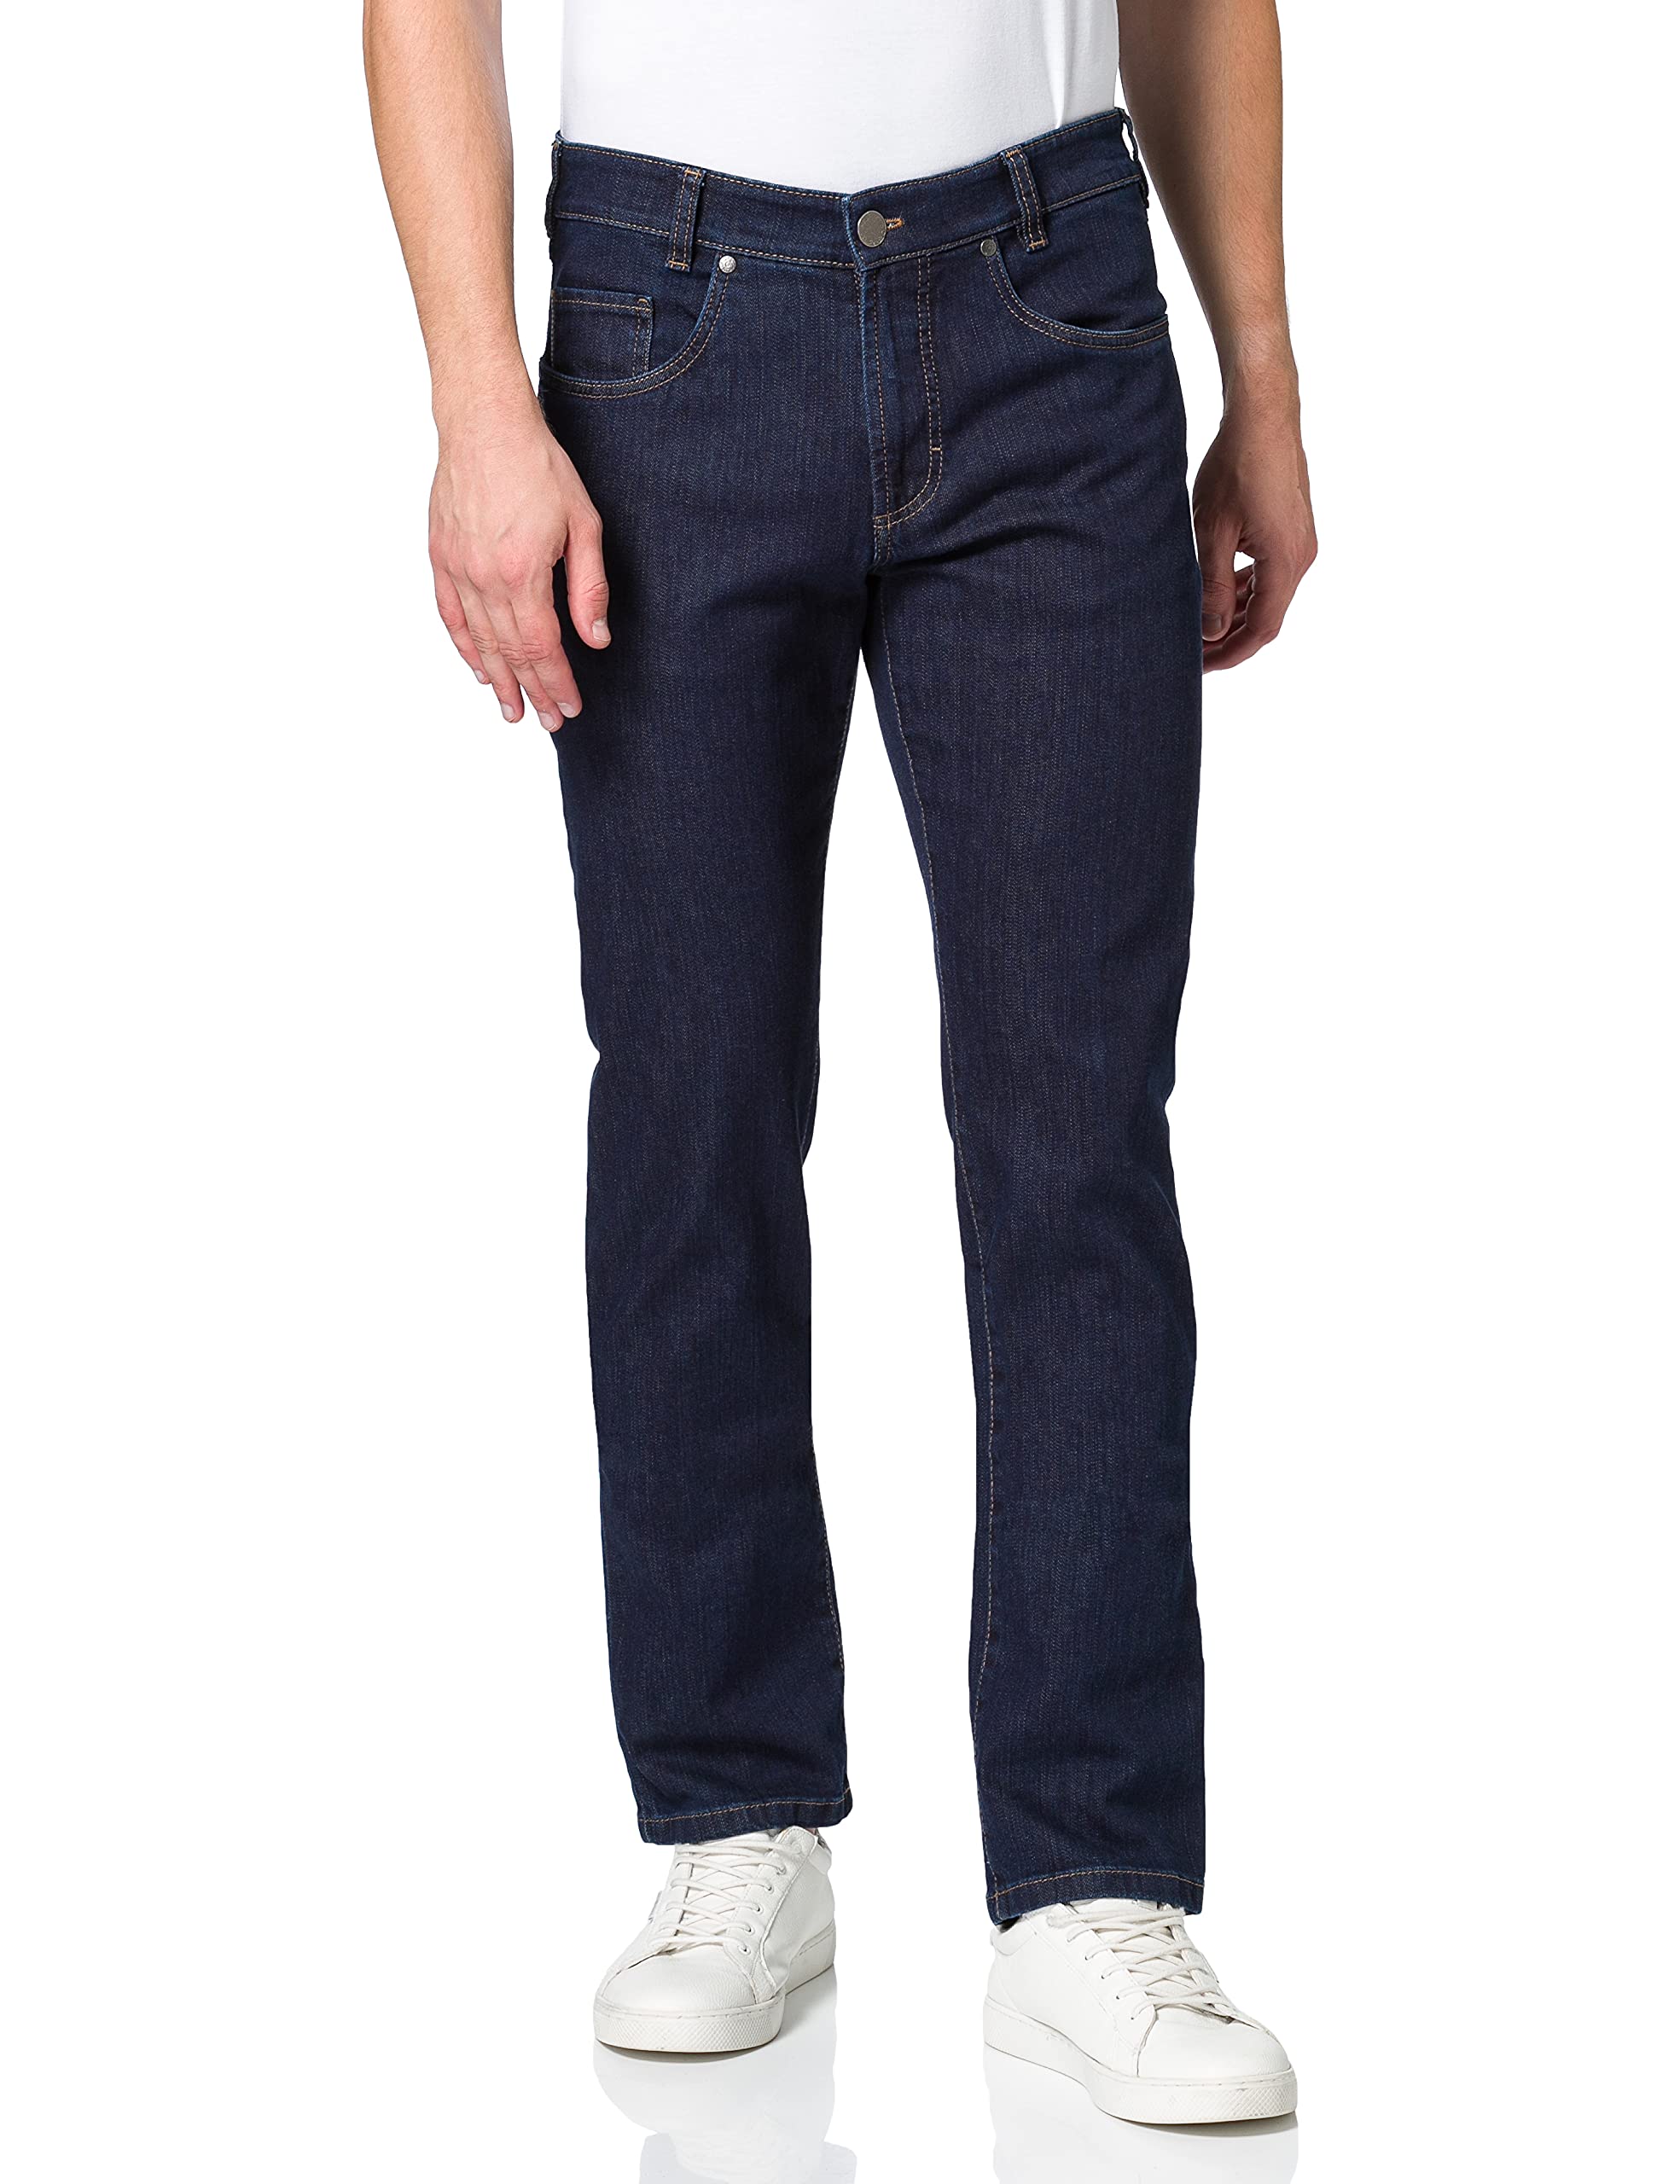 Atelier GARDEUR Herren NEVIO-11 Straight Jeans, Blau (Nachtblau 69), W33/L34 (Herstellergröße: 33/34)